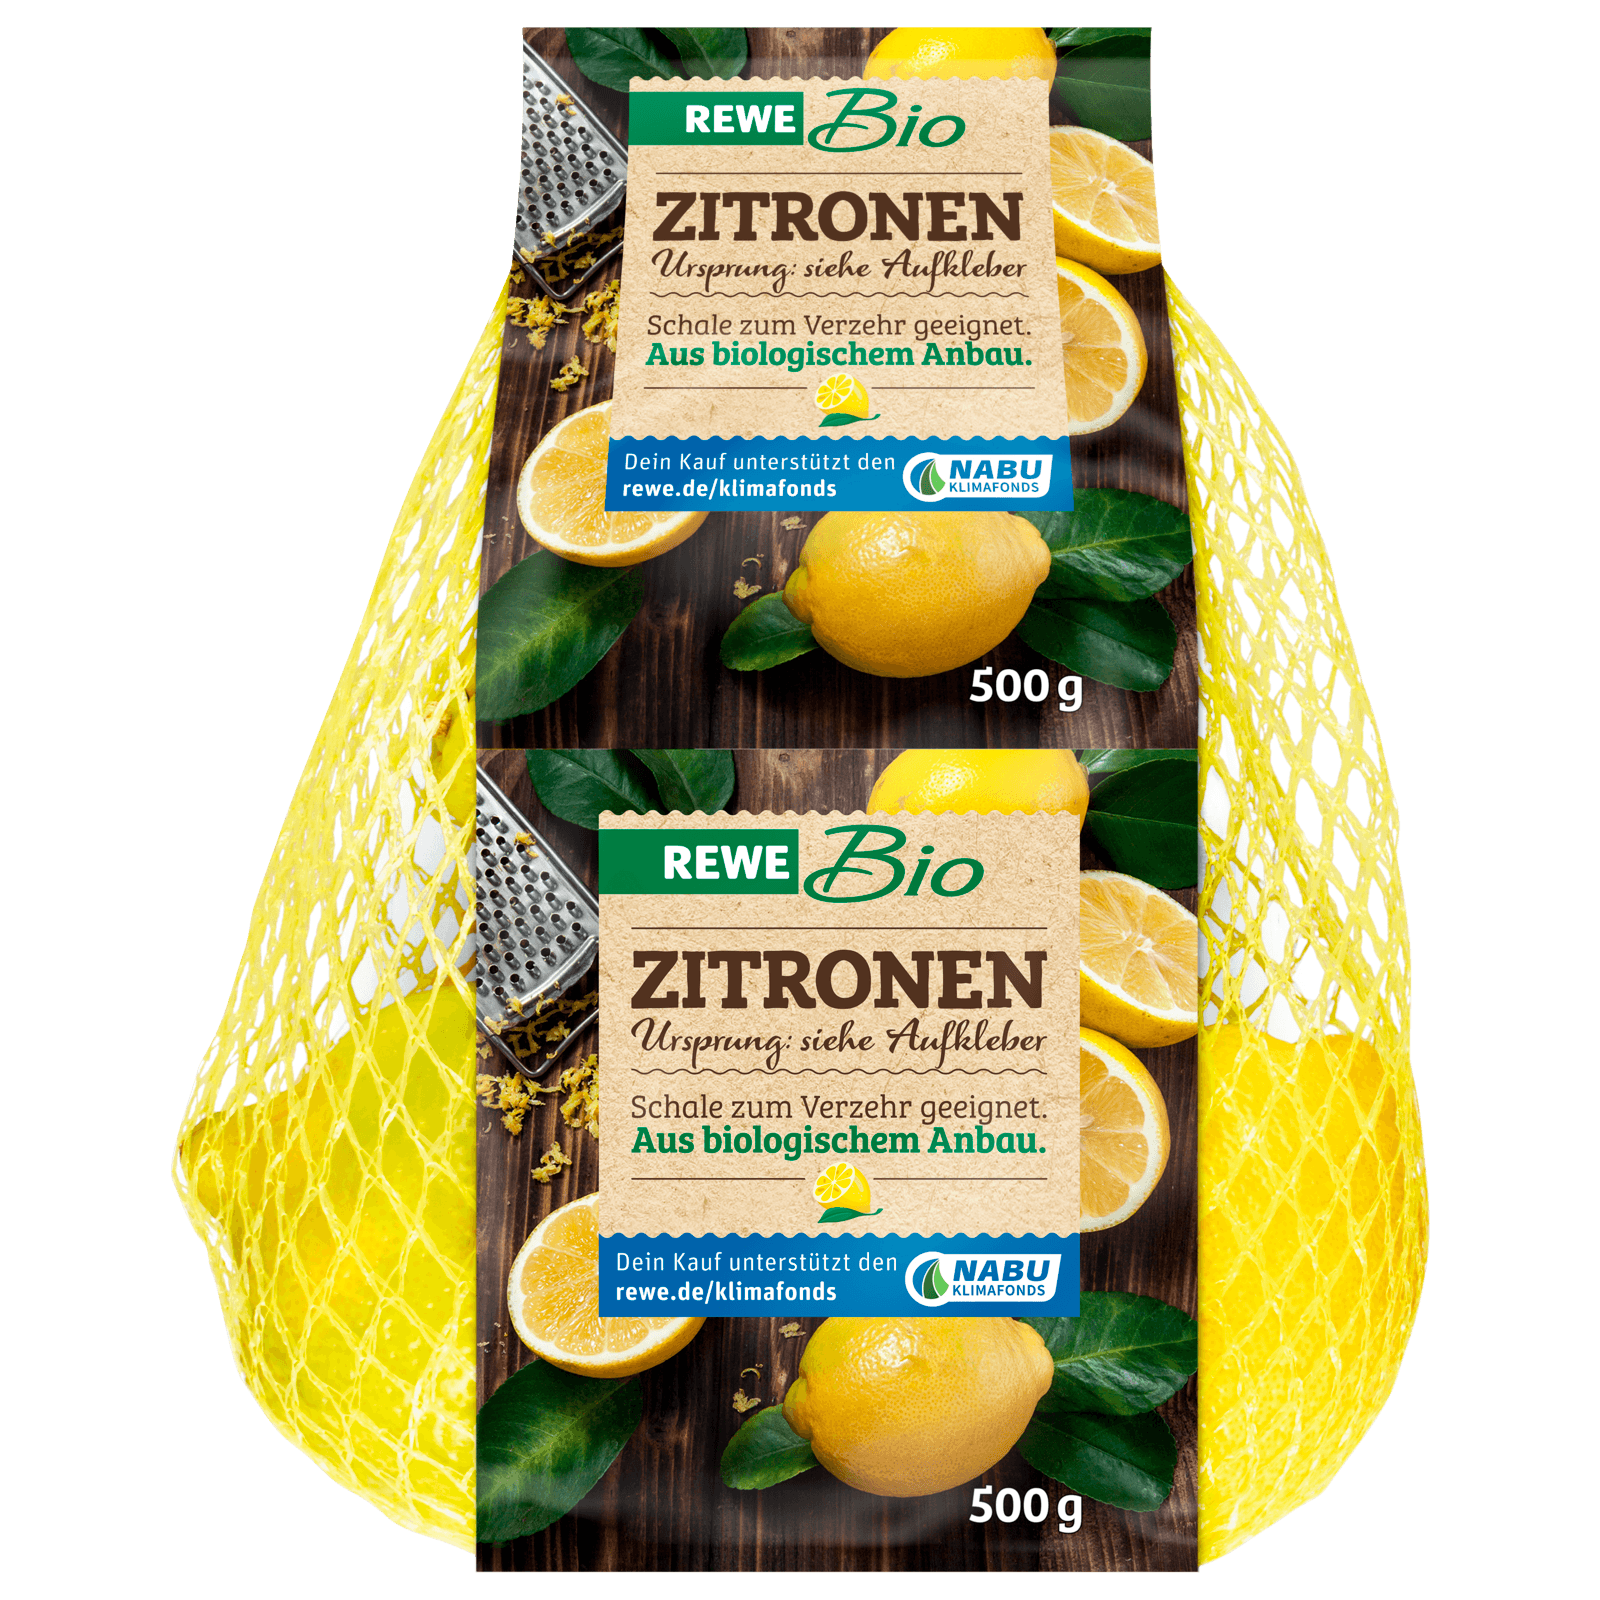 REWE Bio Zitrone 500g im Netz bei REWE online bestellen!